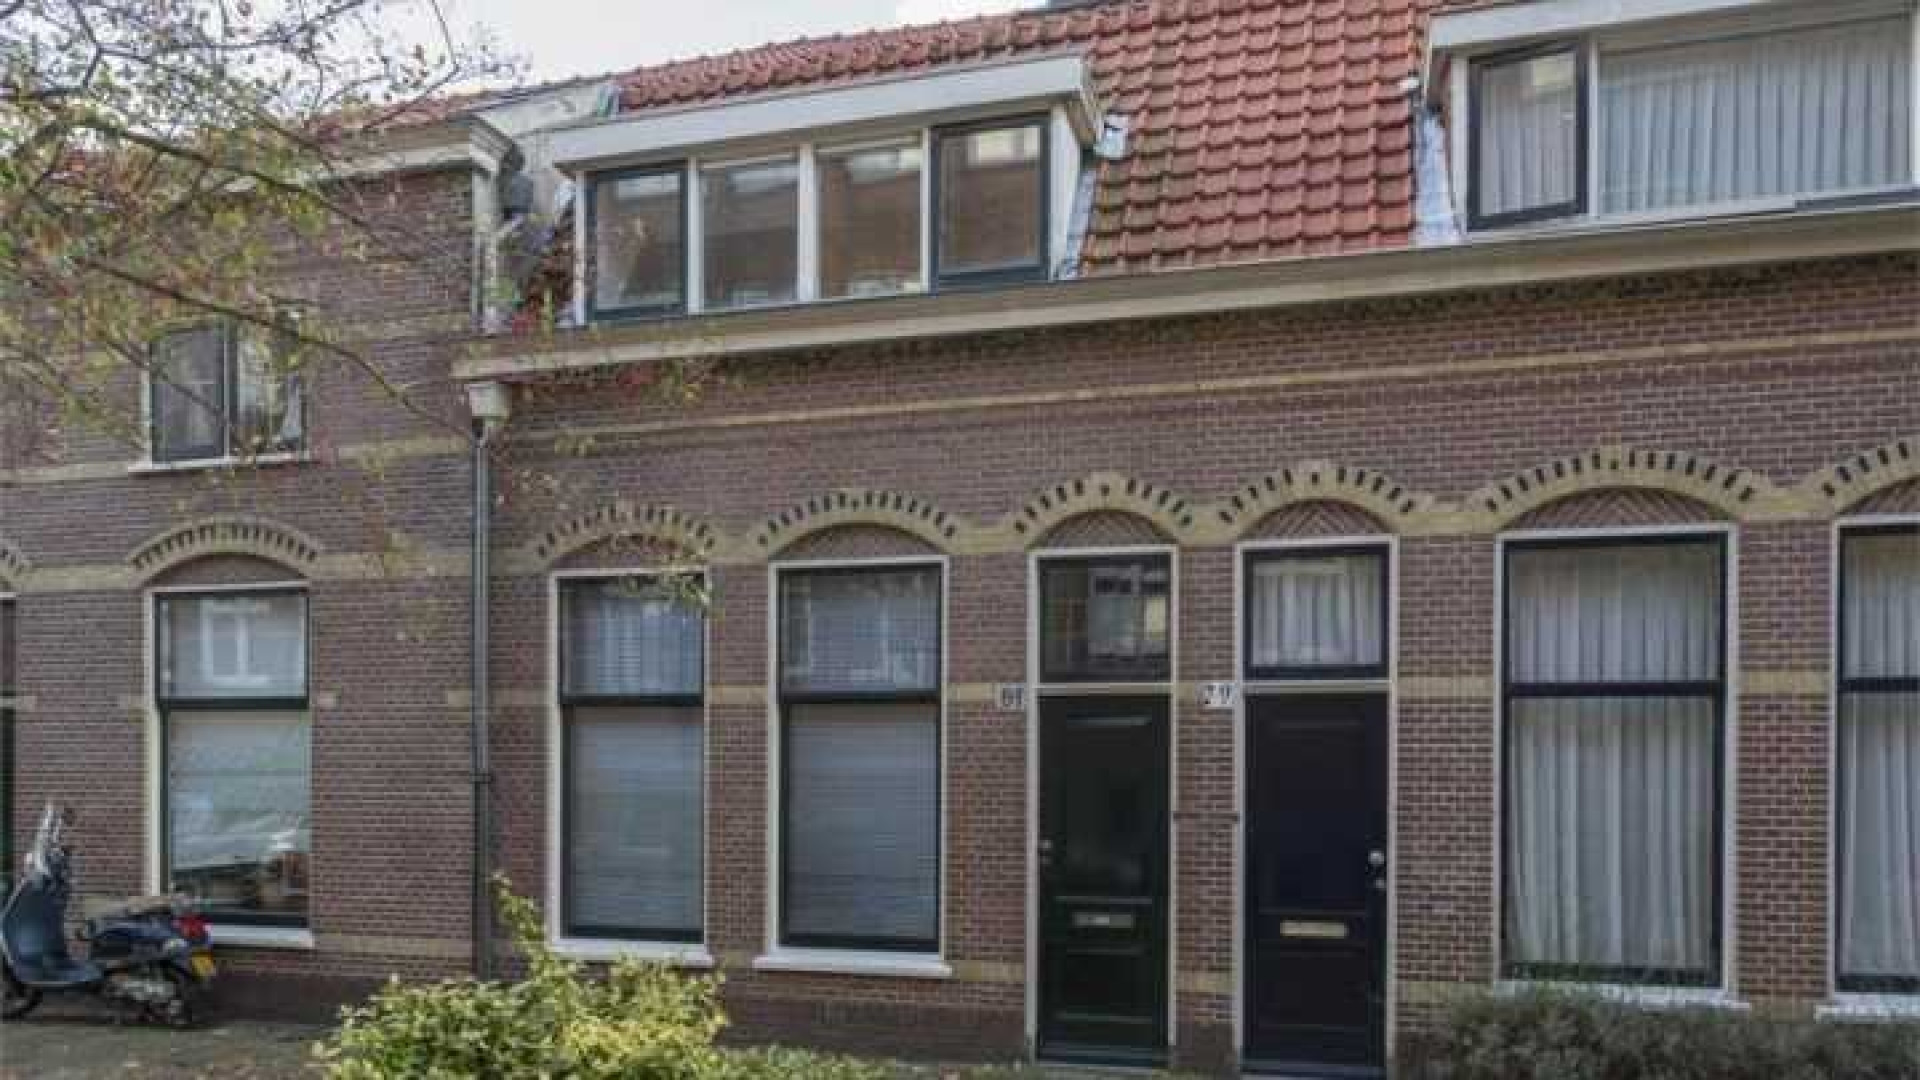 De in scheiding liggende PvdA leider Diederik Samsom koopt dit huis voor zichzelf. Zie foto's 1